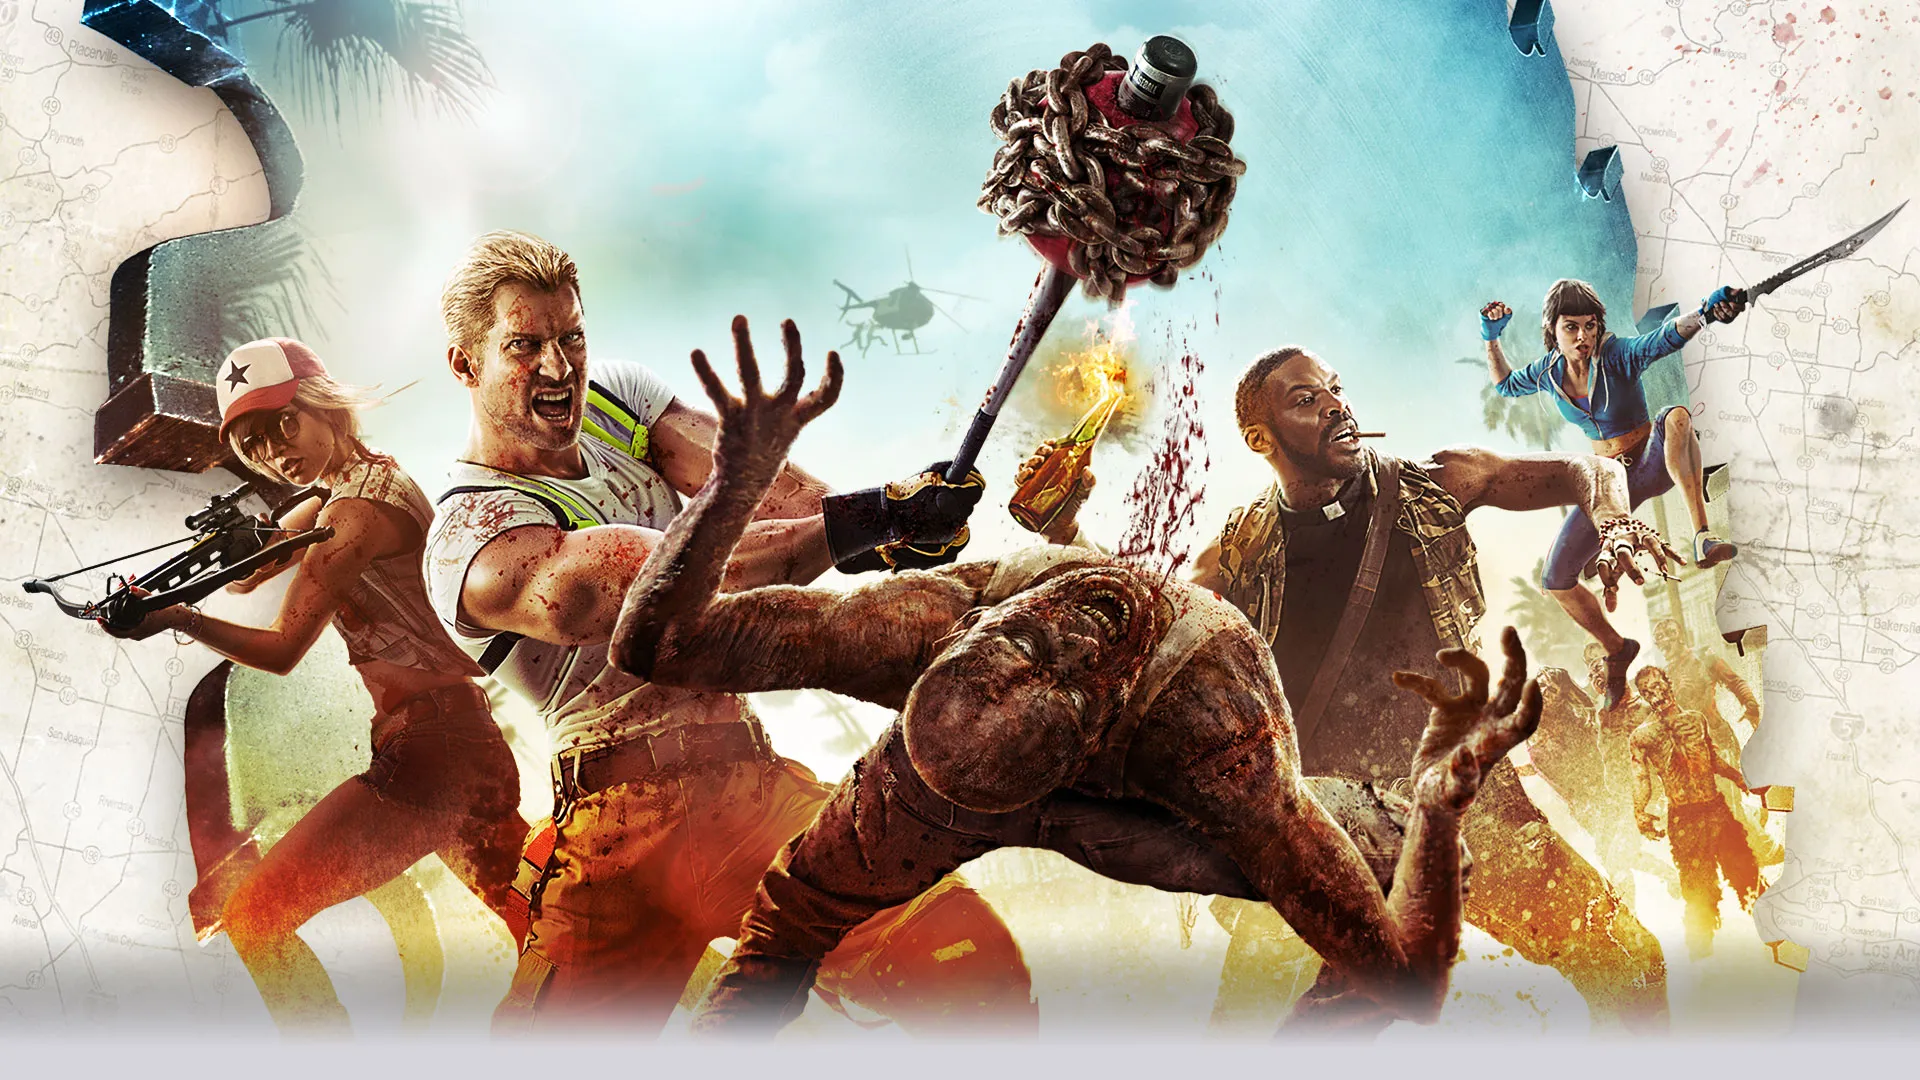 Dead Island 2 revela sus requisitos técnicos en PC y el rendimiento en  consolas - Generacion Xbox